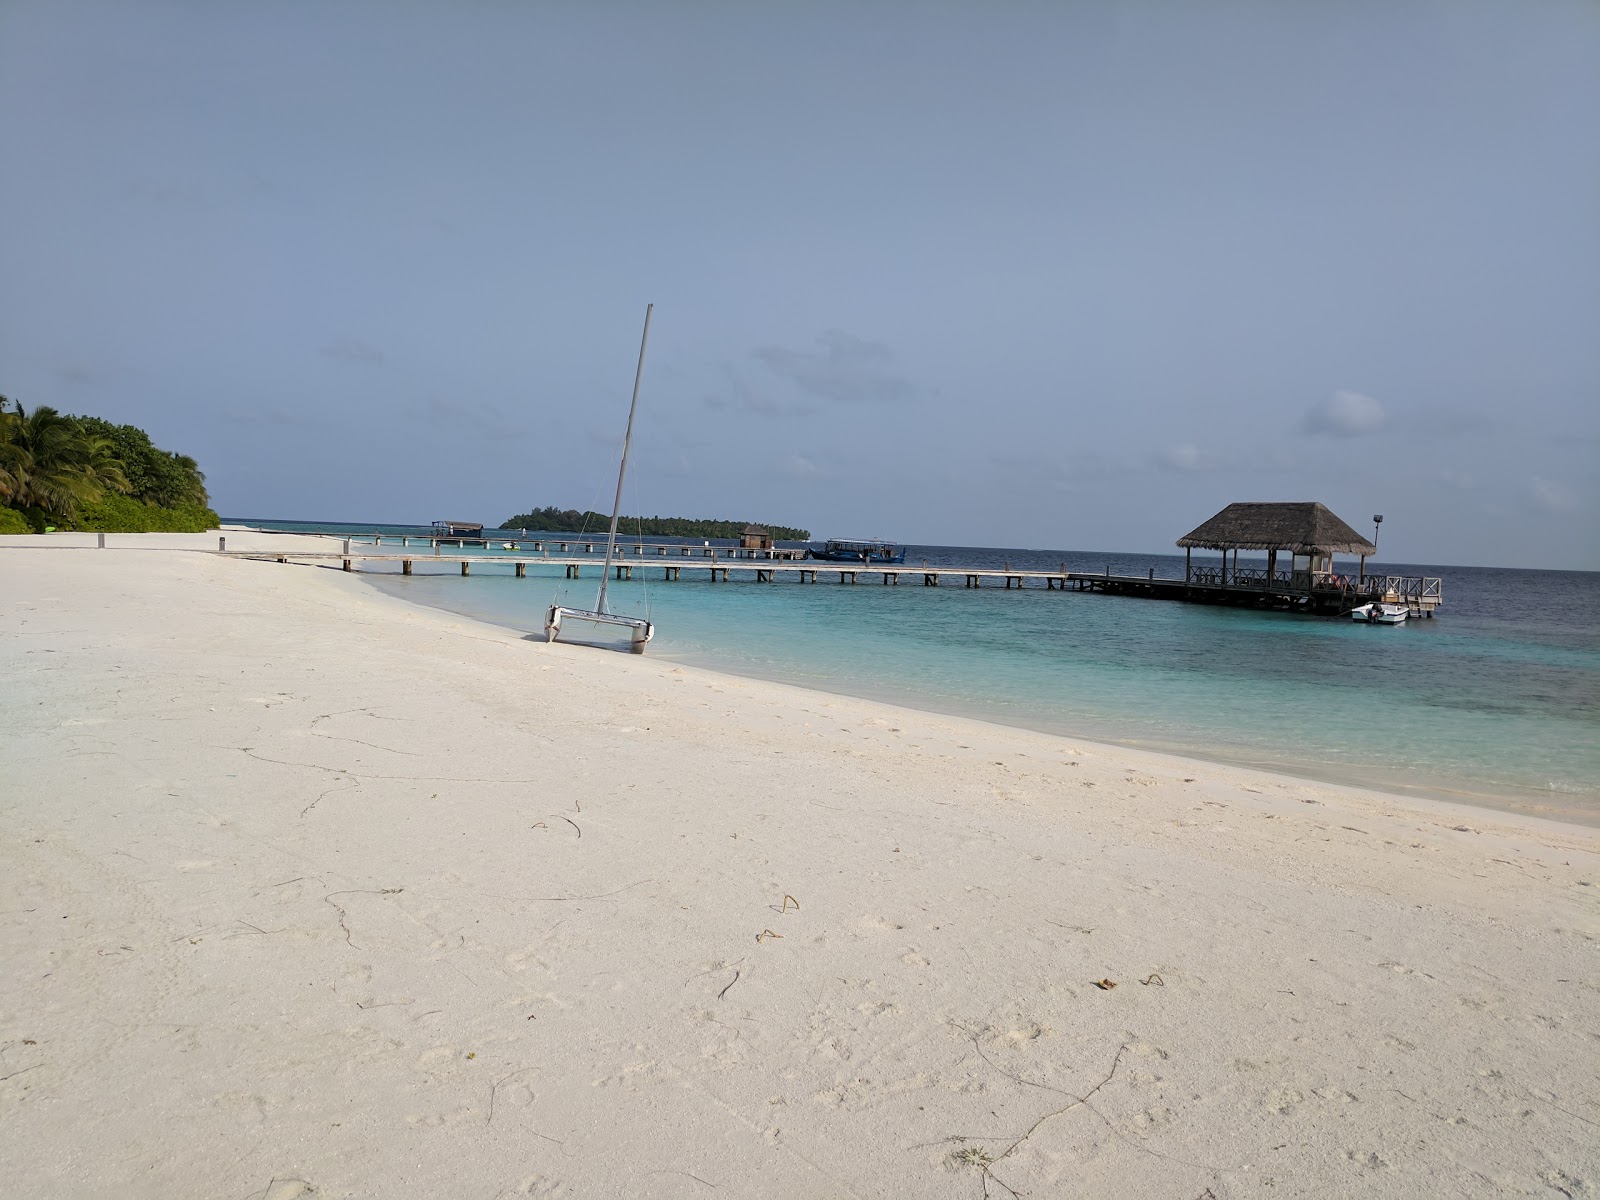 Zdjęcie Como Resort Island z powierzchnią turkusowa czysta woda